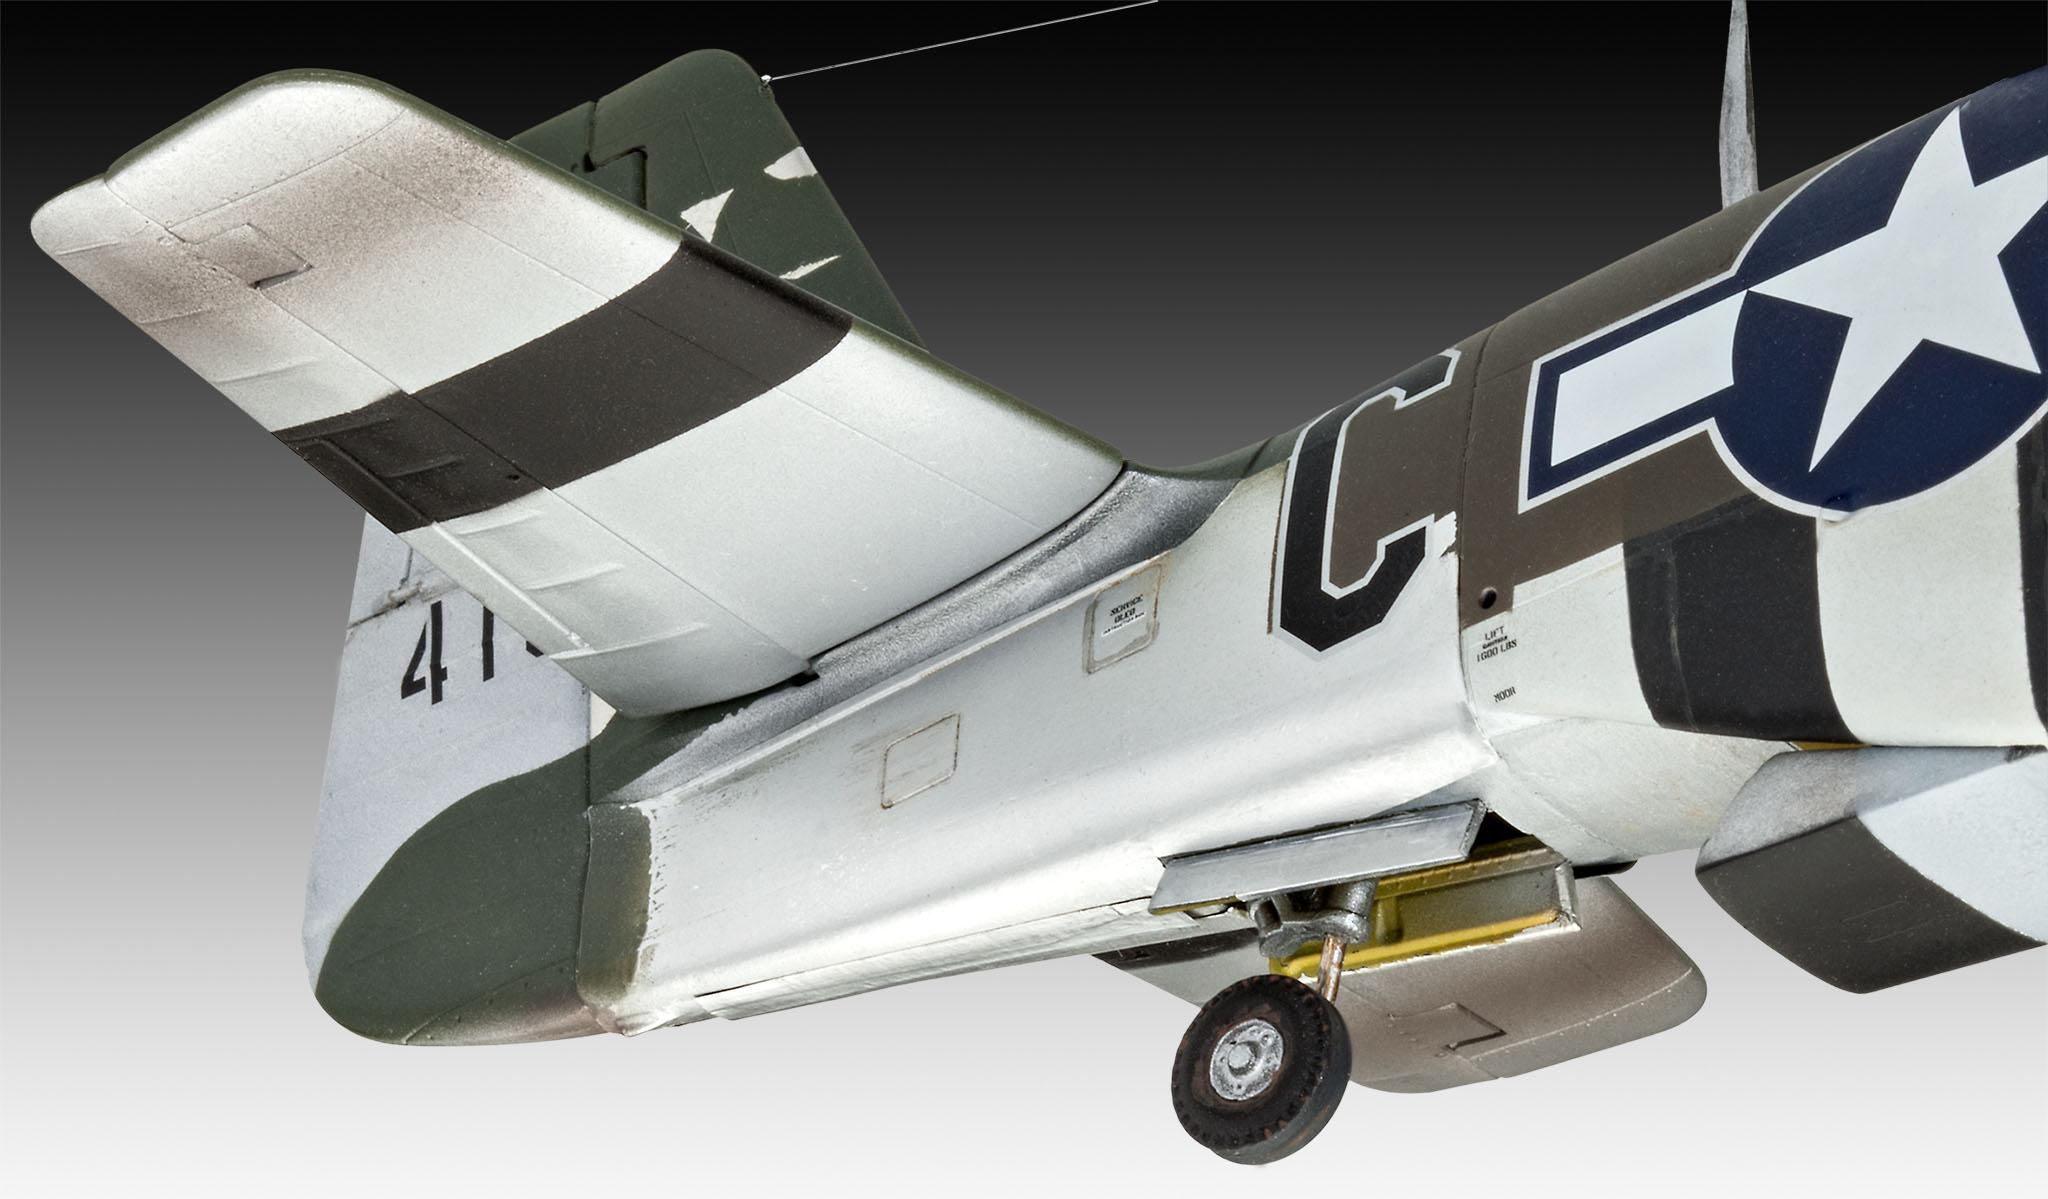 Maquette militaire - Avion Mustang p-51D - 61040 - Kits maquettes